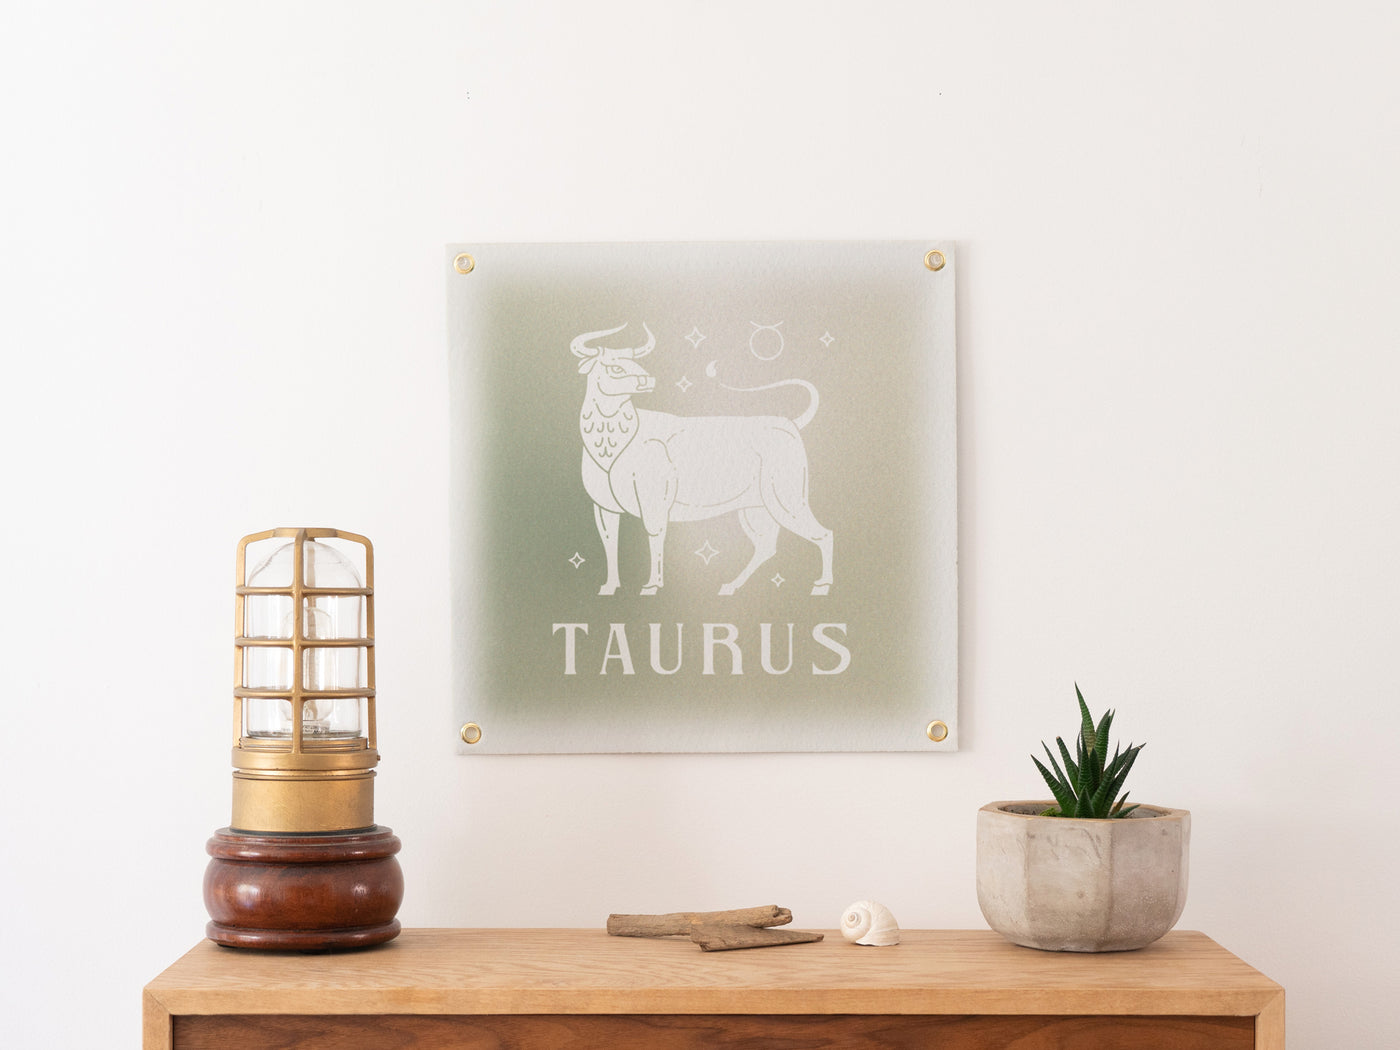 Taurus April 20 - May 20